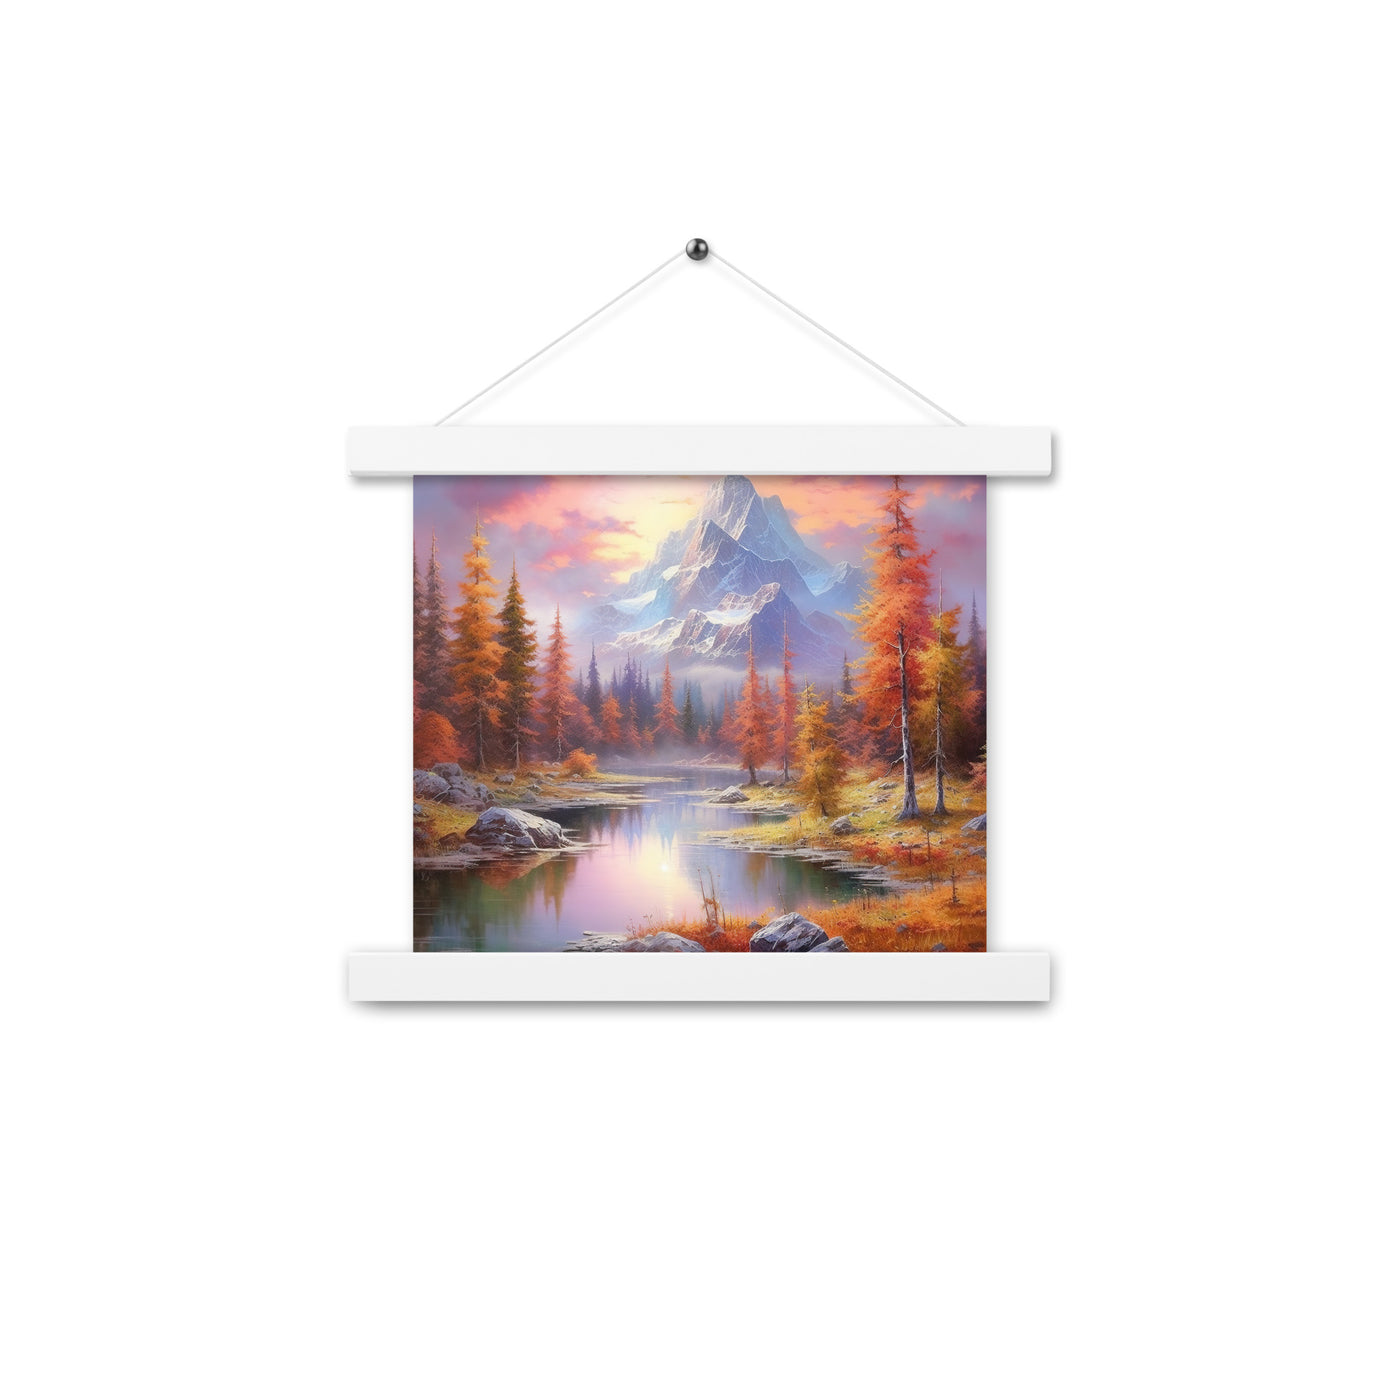 Landschaftsmalerei - Berge, Bäume, Bergsee und Herbstfarben - Premium Poster mit Aufhängung berge xxx 25.4 x 25.4 cm